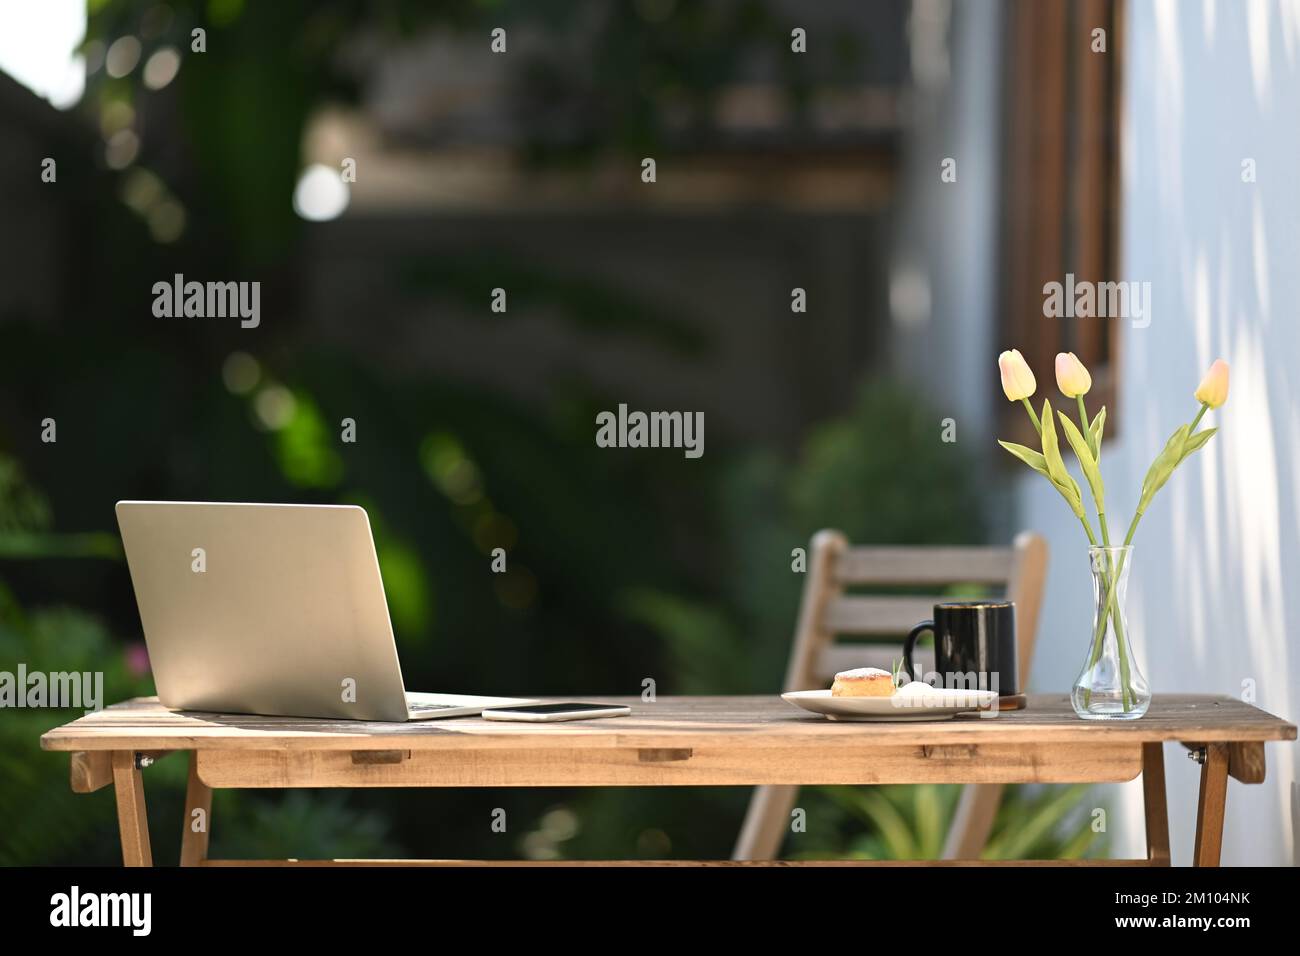 Computer portatile, tazza di caffè, notebook e vaso da fiori su un tavolo di legno all'aperto Foto Stock